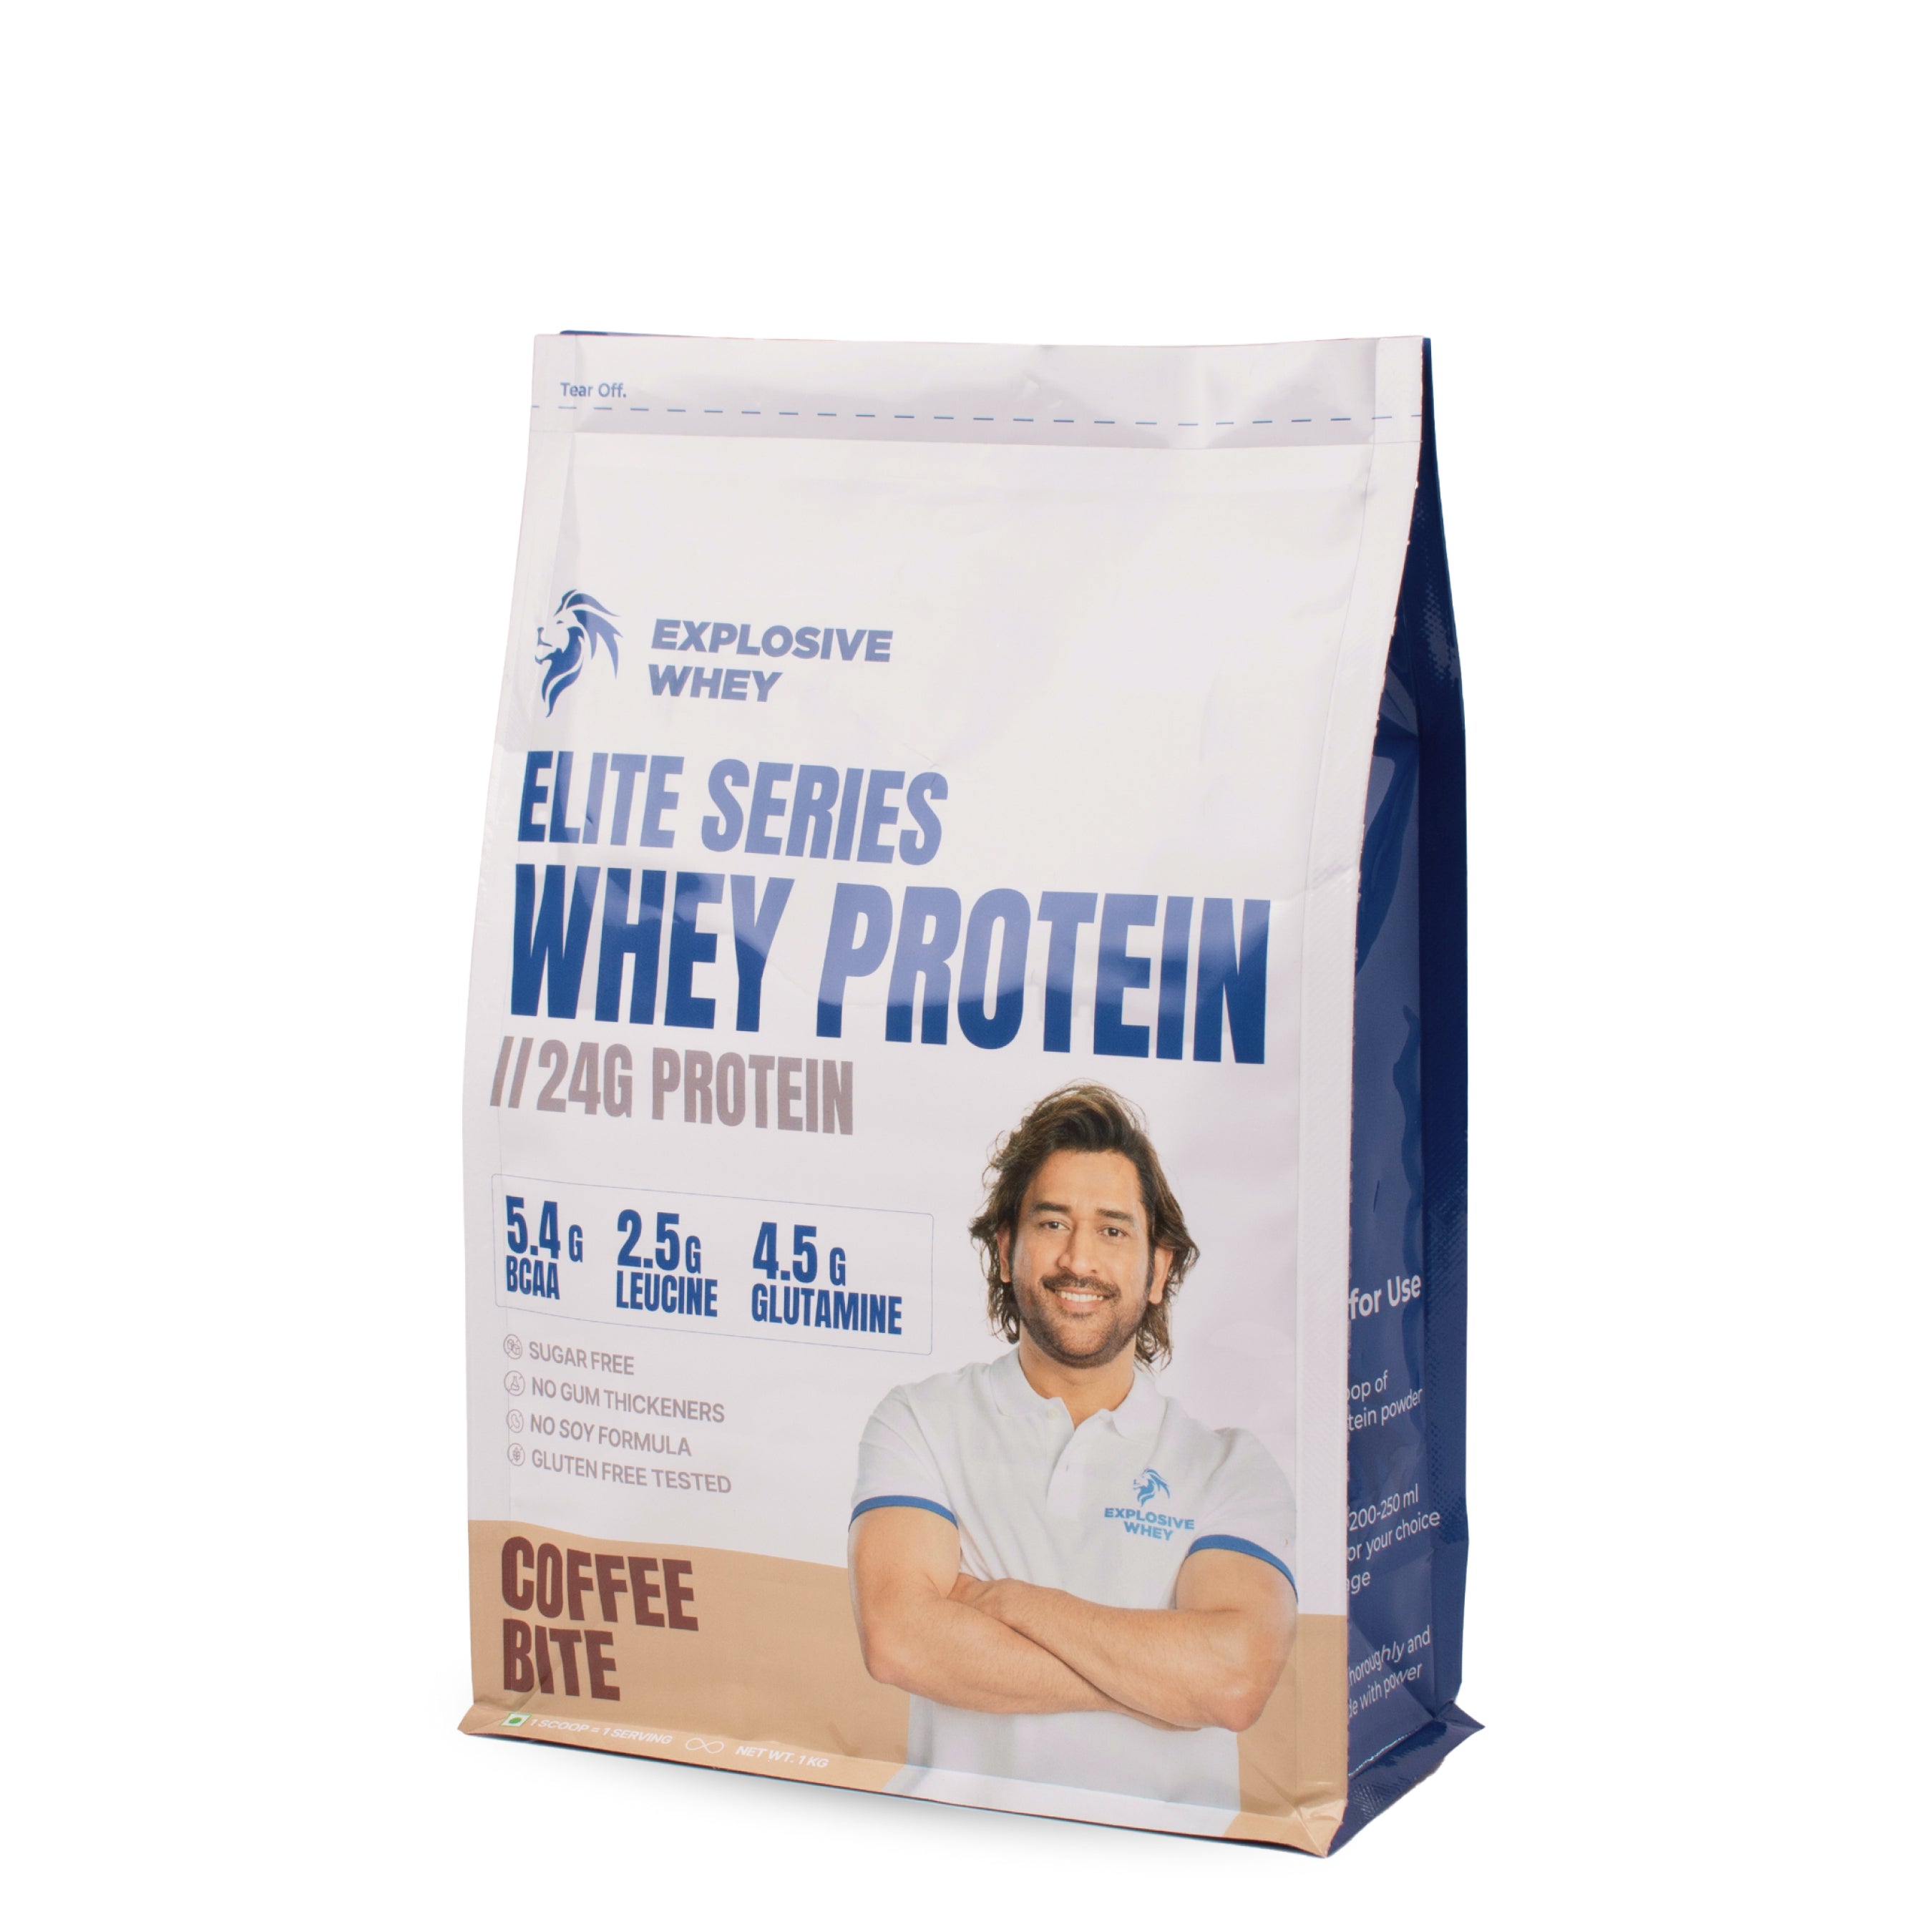 Elite Series Whey Protein